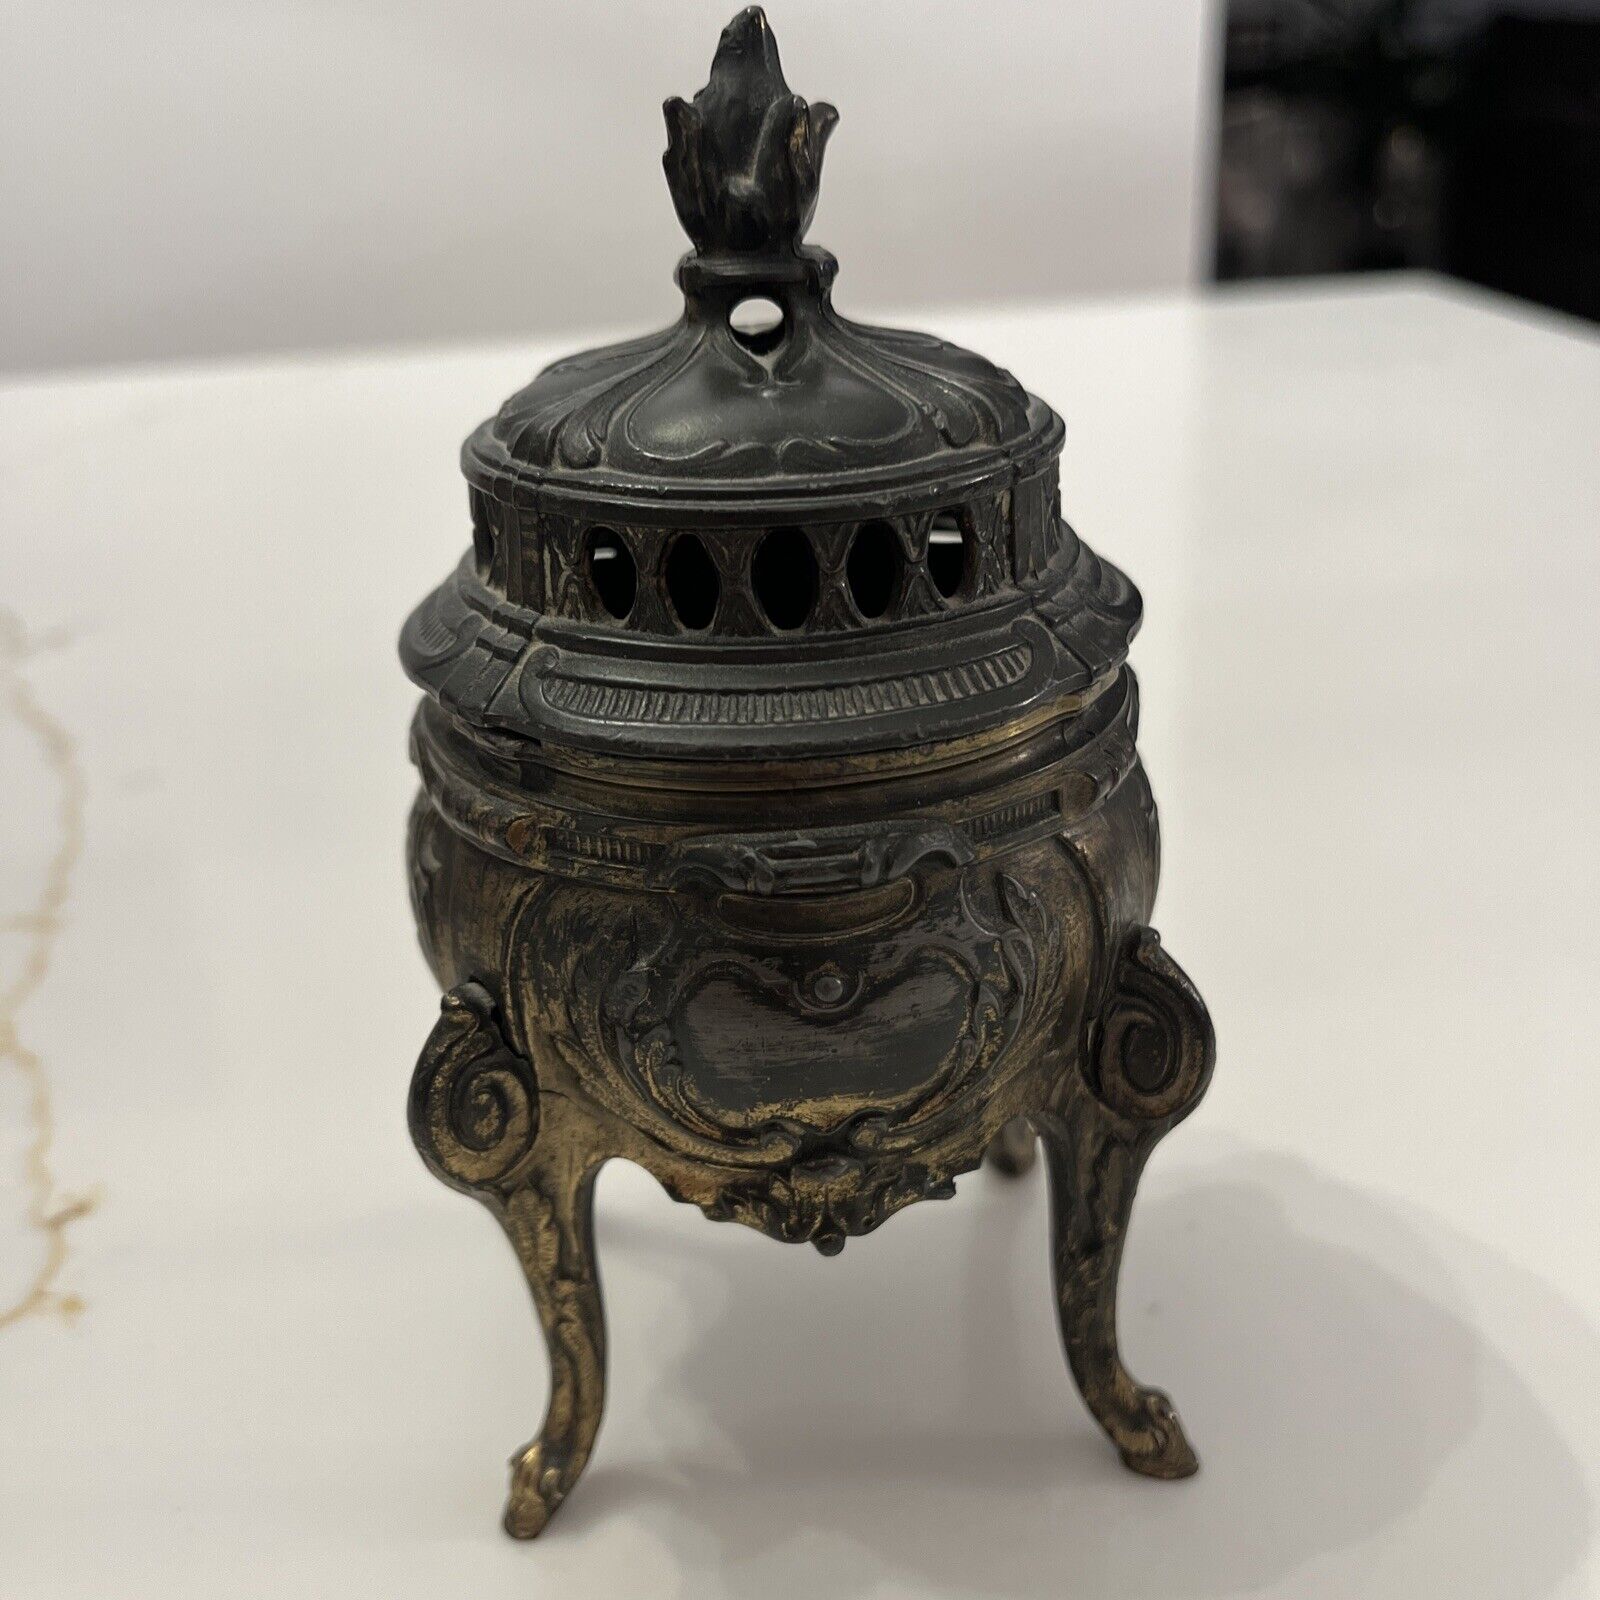 French Censer Incense Burner Vintage Decorative Arts Piece